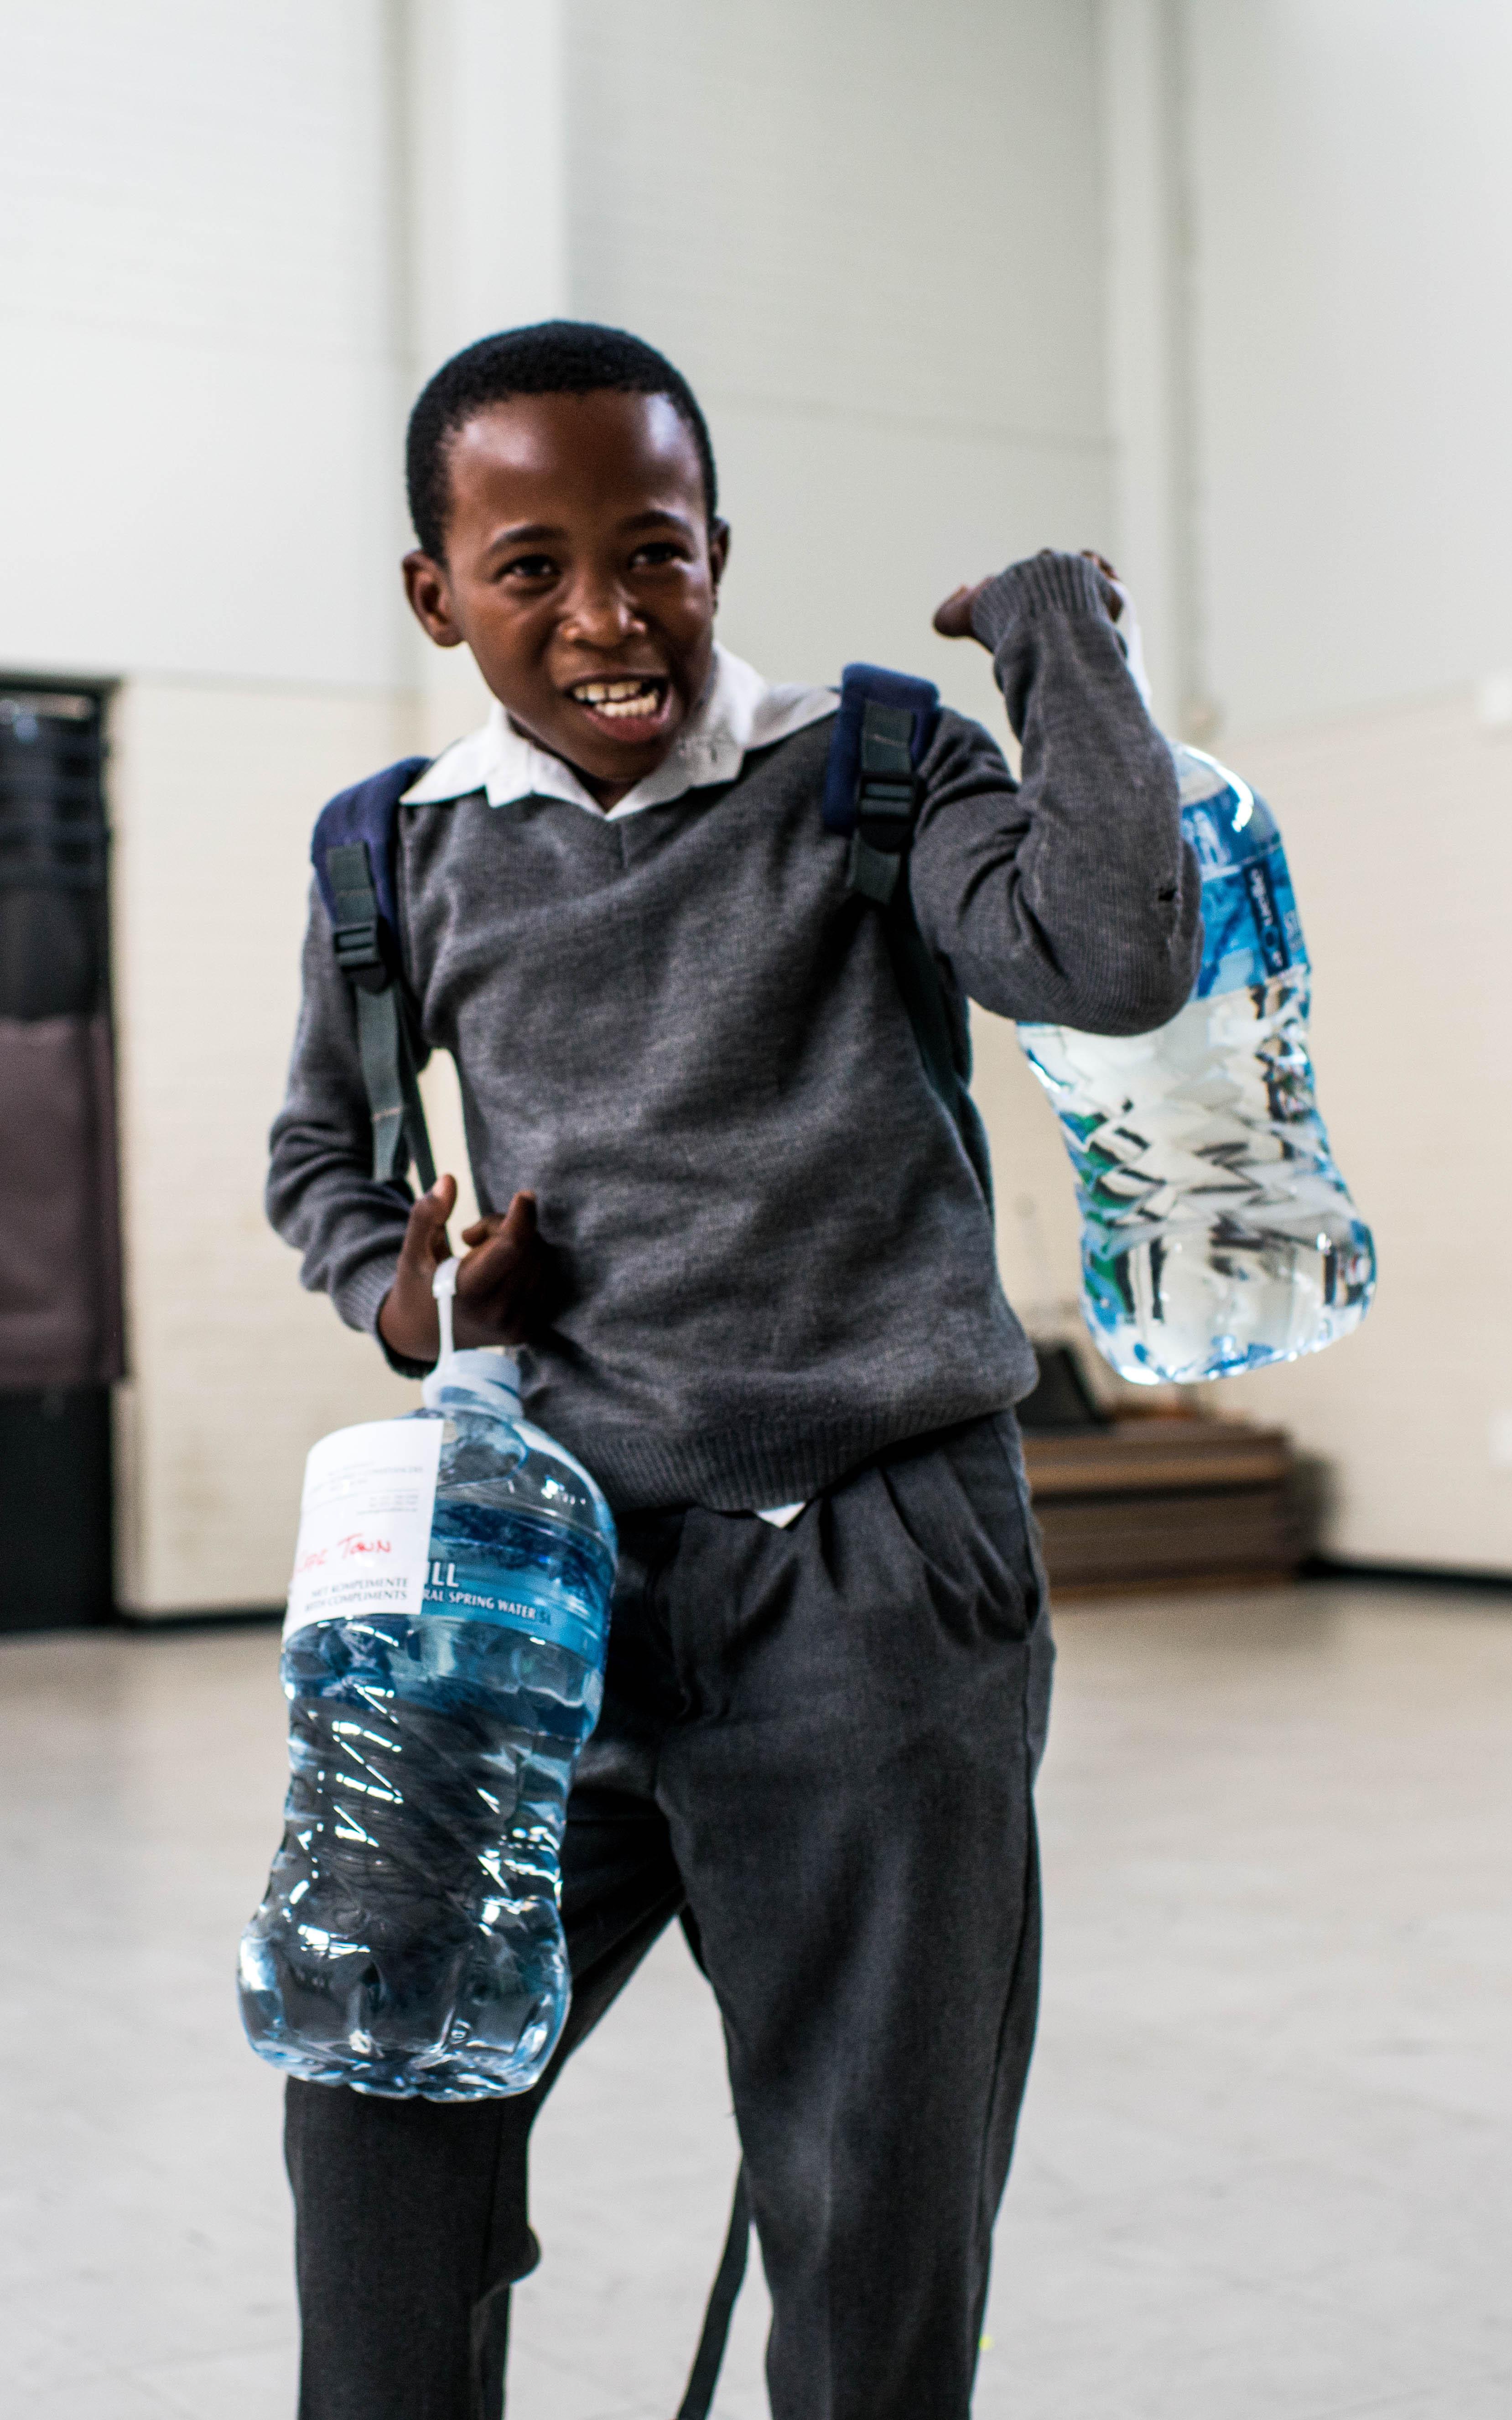 Black boy carrying 2 water bottles